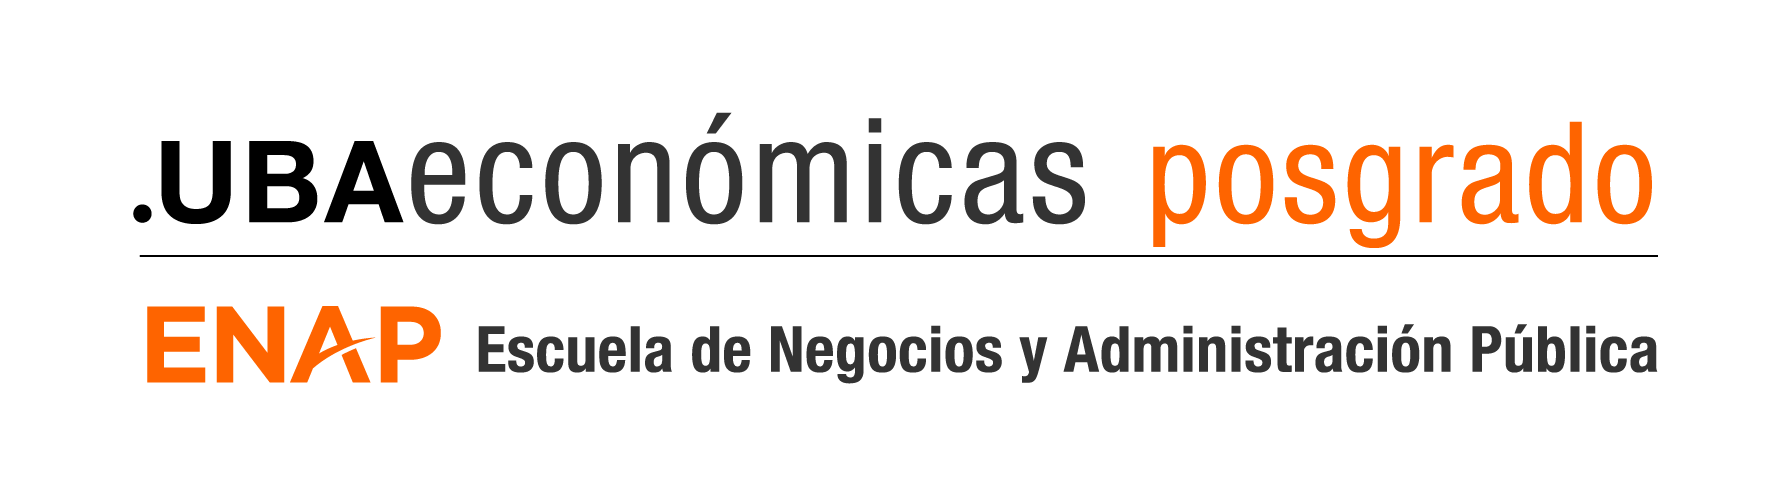 UBA Económicas - Posgrado ENAP Escuela de Negocios y Administración Pública